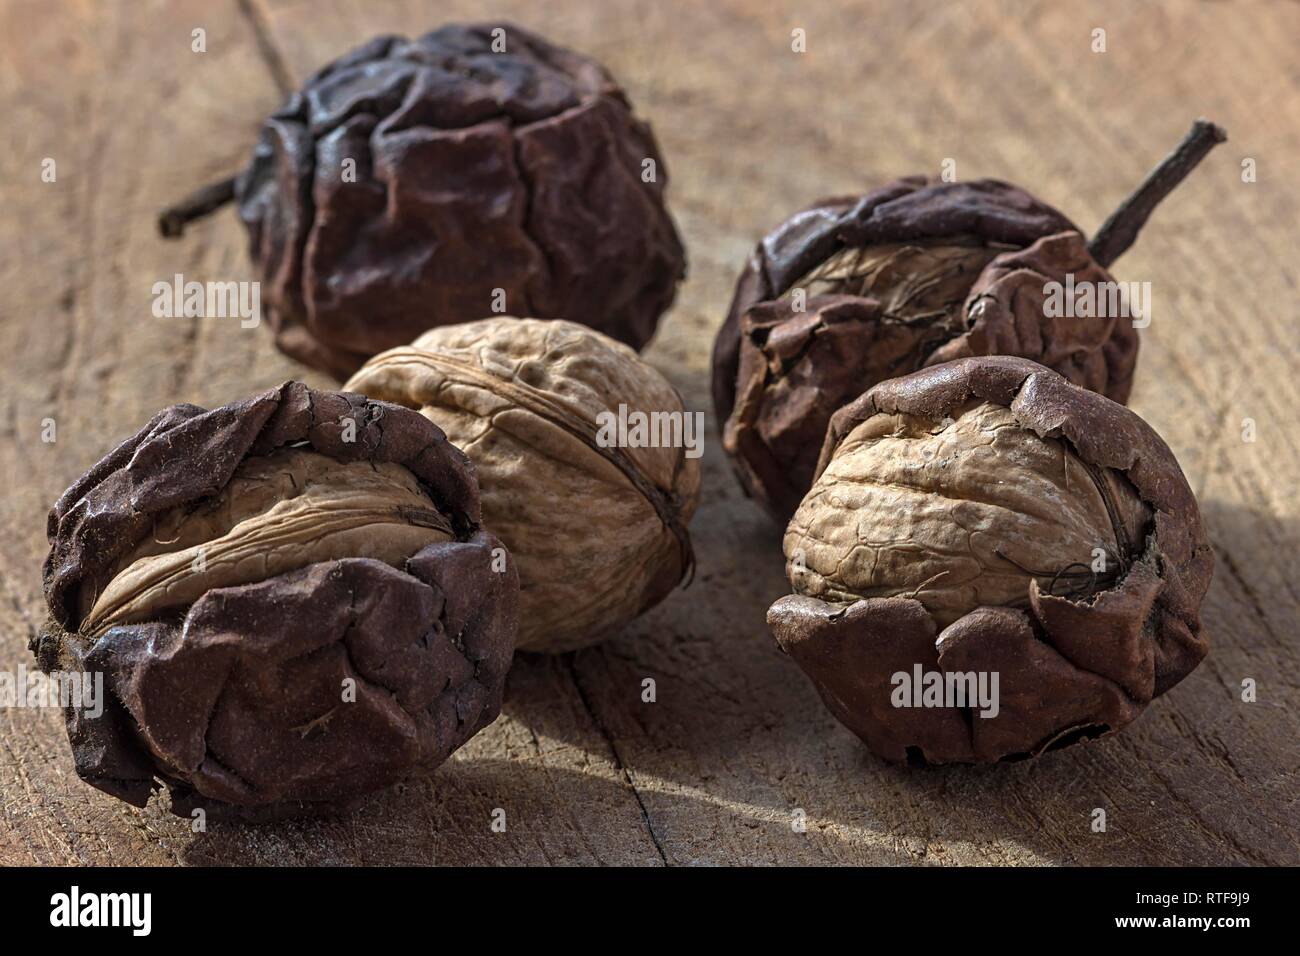 Ripe walnuts (Juglans regia) in dried shell, Germany Stock Photo